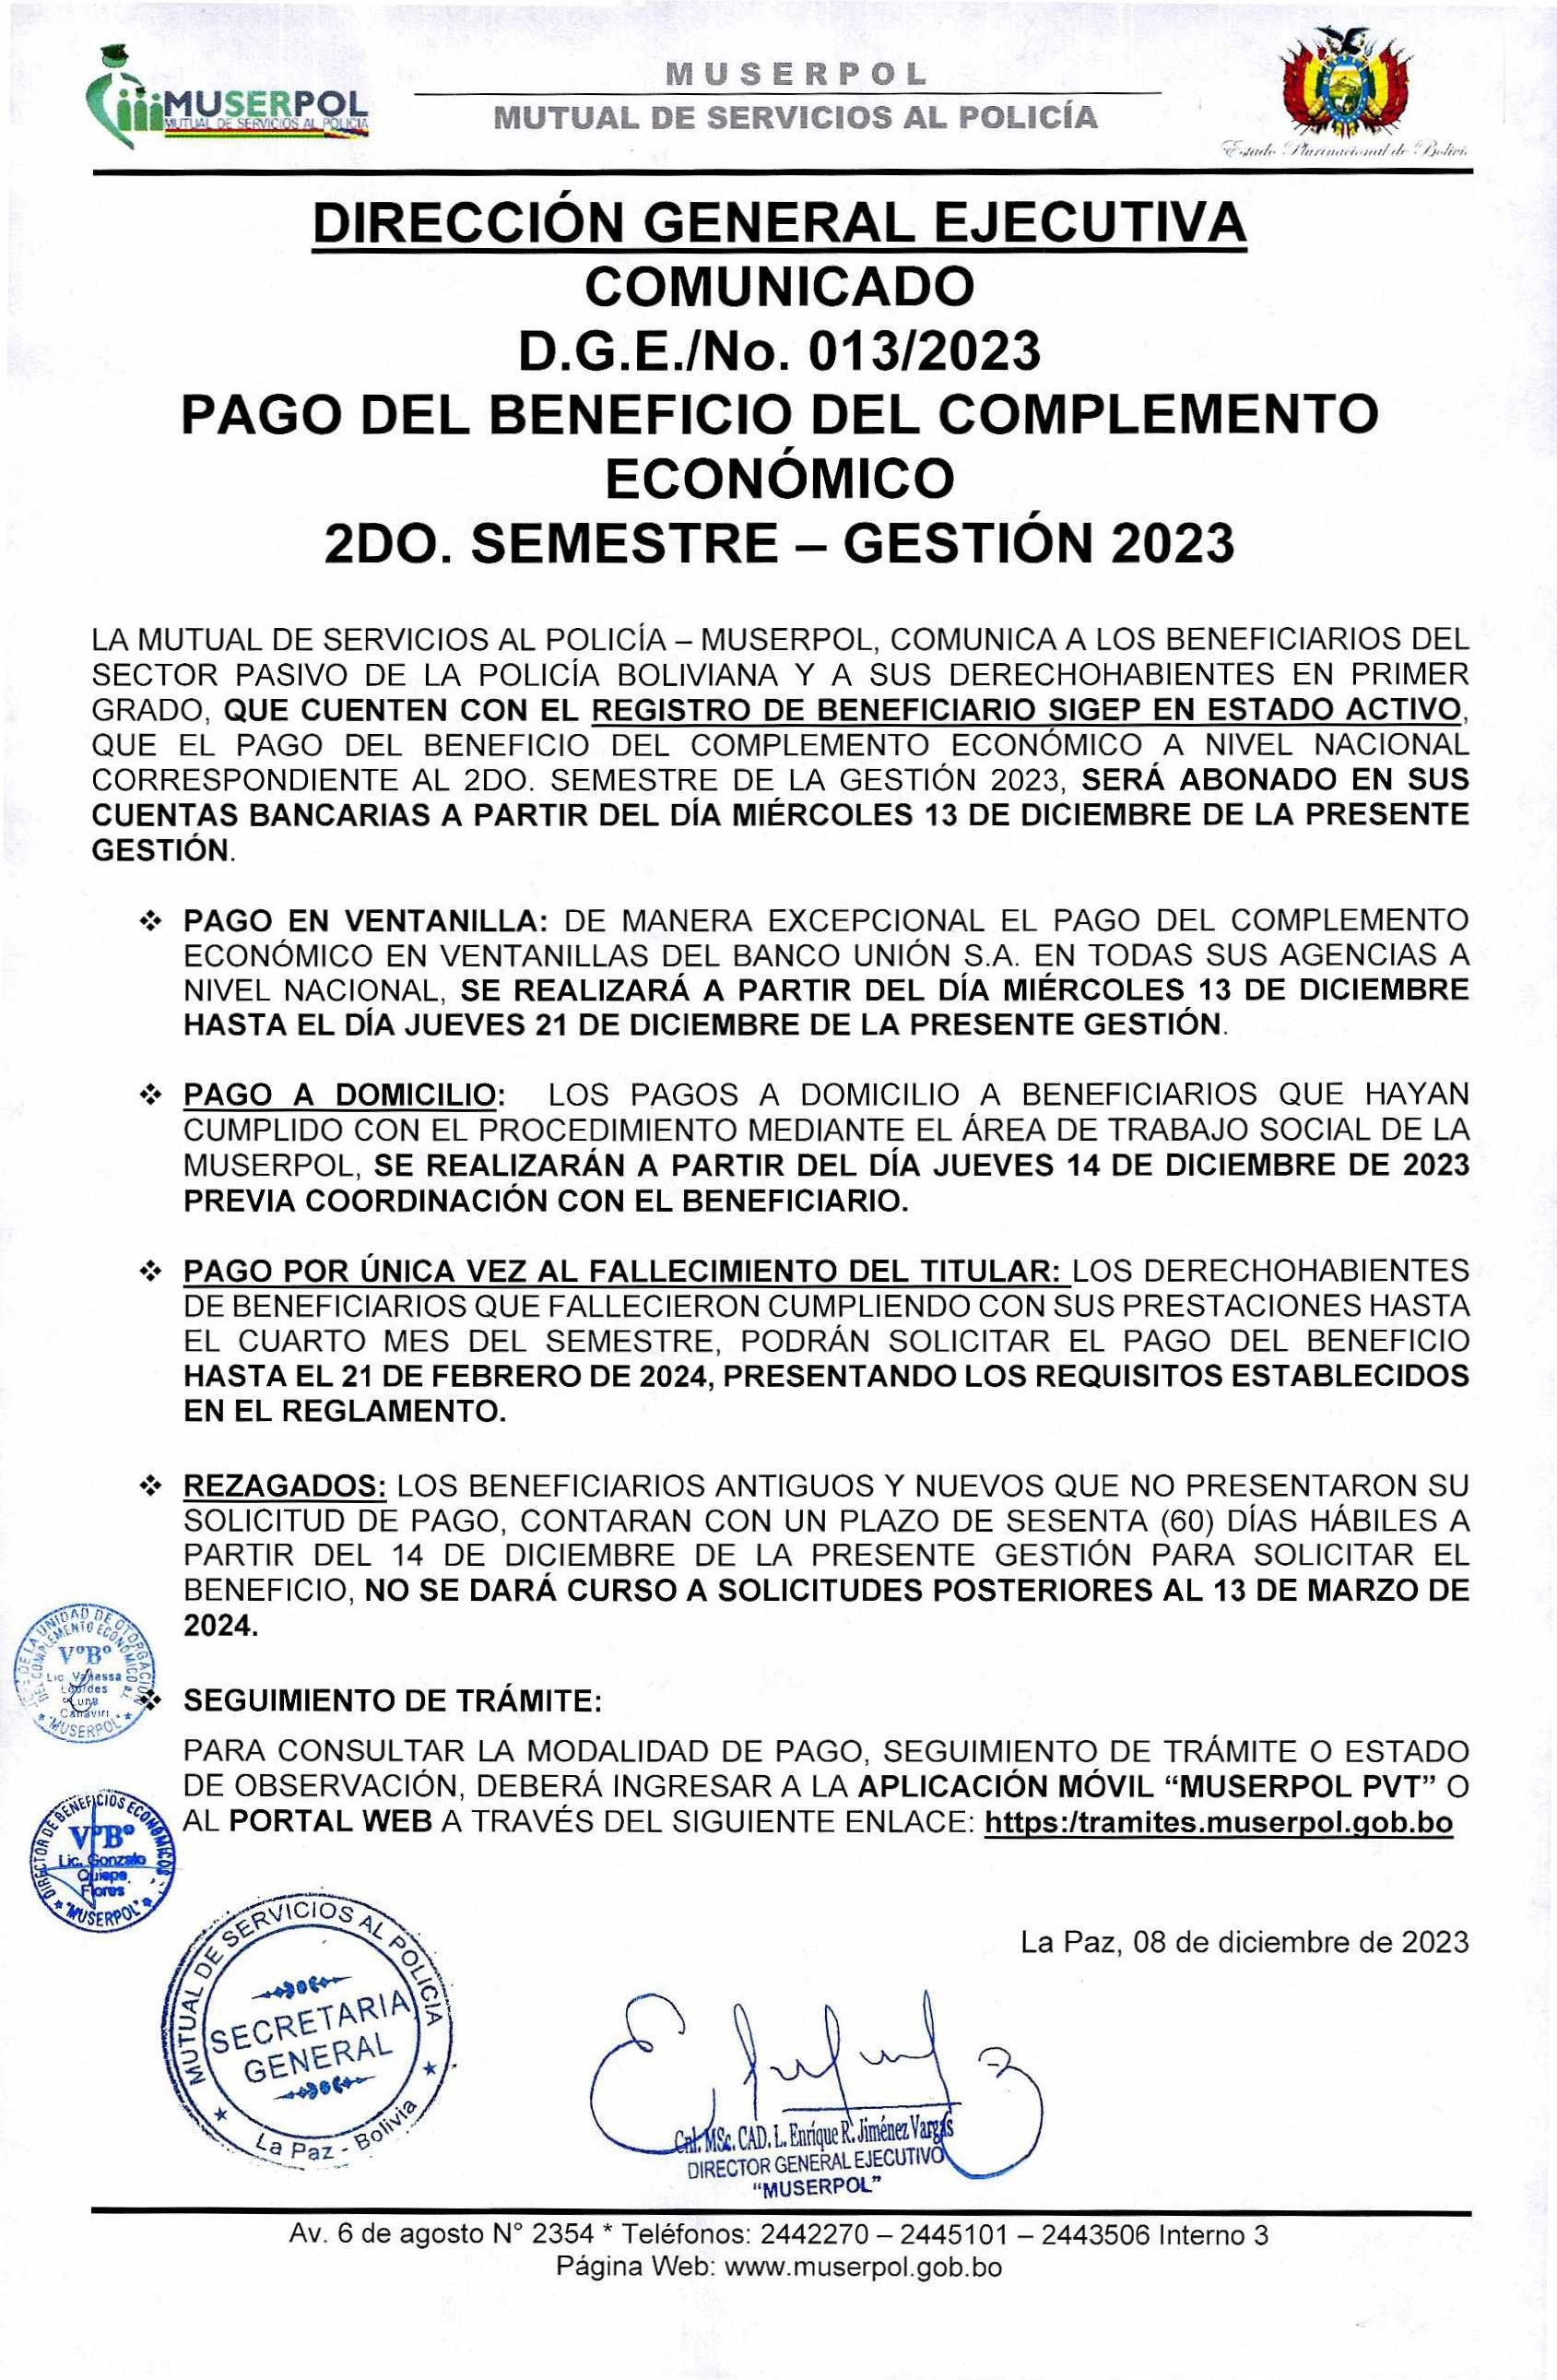 COMUNICADO PAGO DEL COMPLEMENTO ECONÓMICO  SEGUNDO SEMESTRE - GESTIÓN 2023